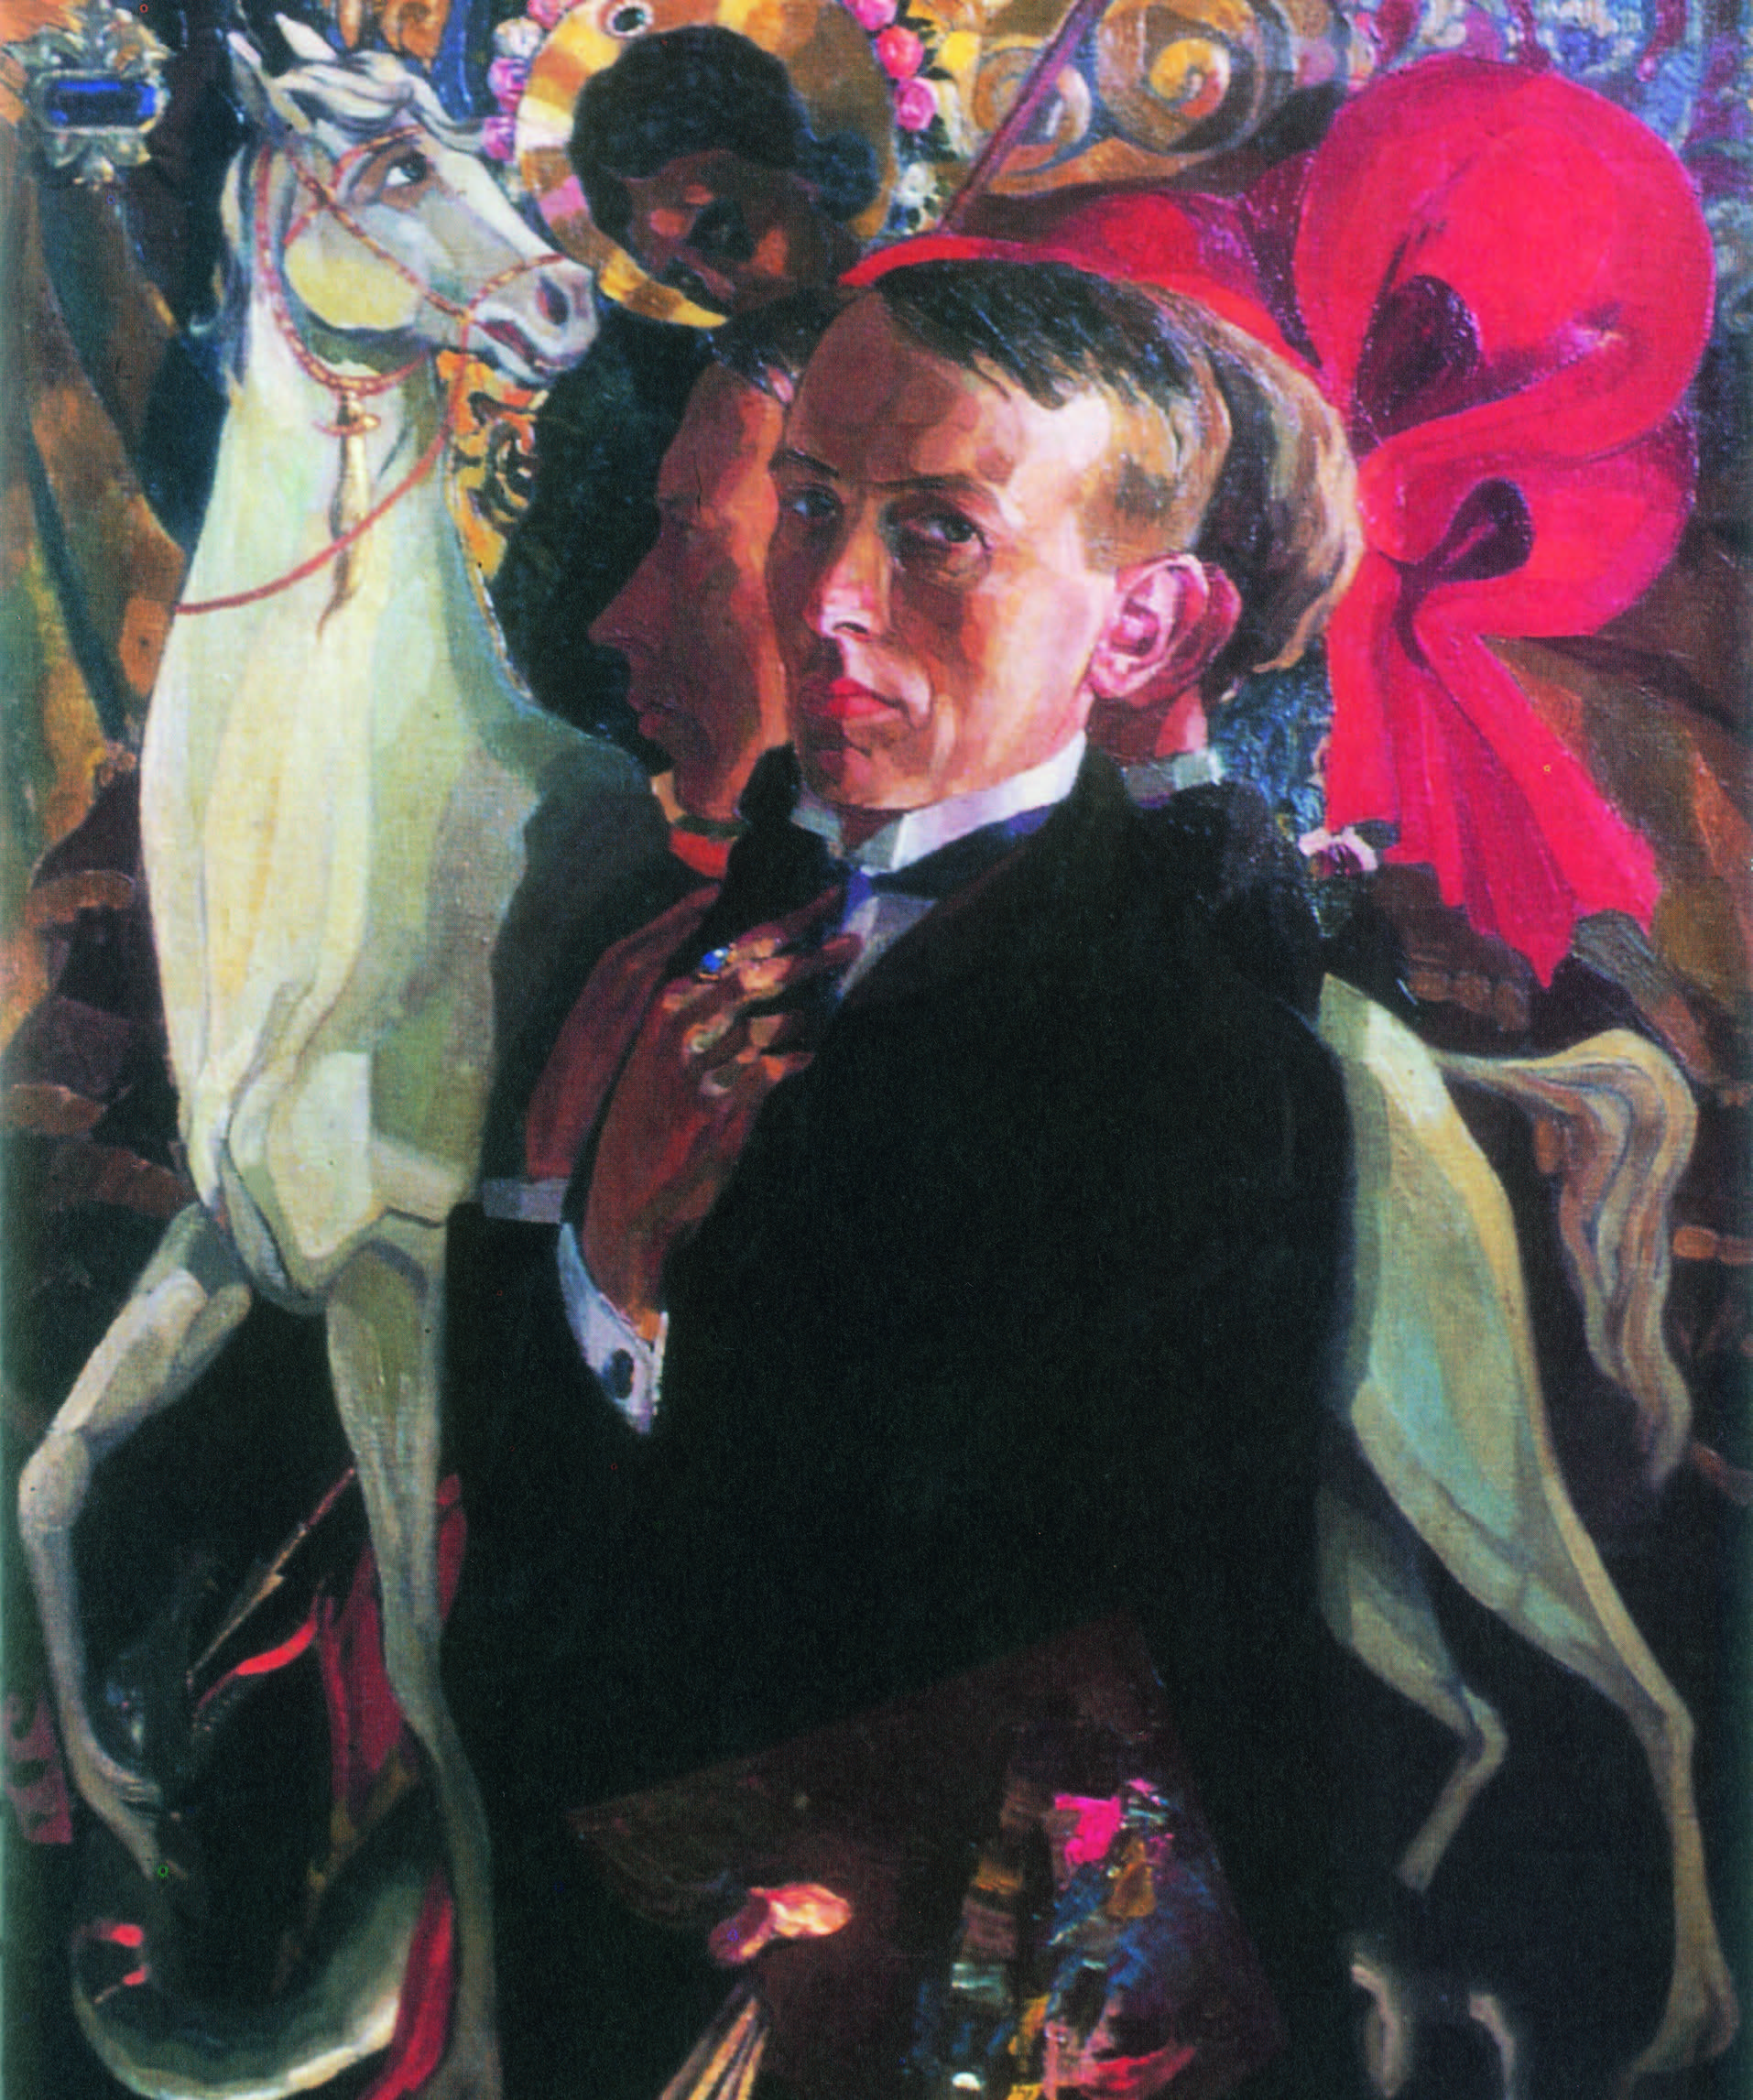 Georg Schlicht: Selbstbildnis mit Hl. Georg, der den Drachen besiegt. 1920, Öl auf Leinwand, 75 x 60 cm, Privatbesitz